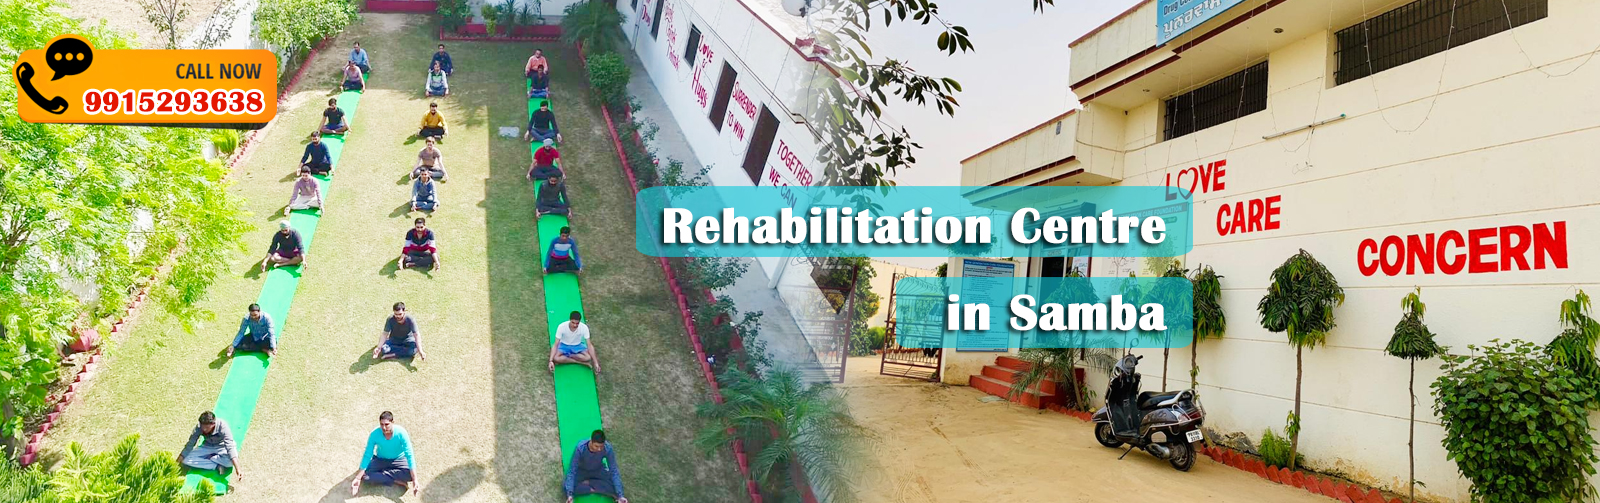 Rehabilitation Centre in Samba